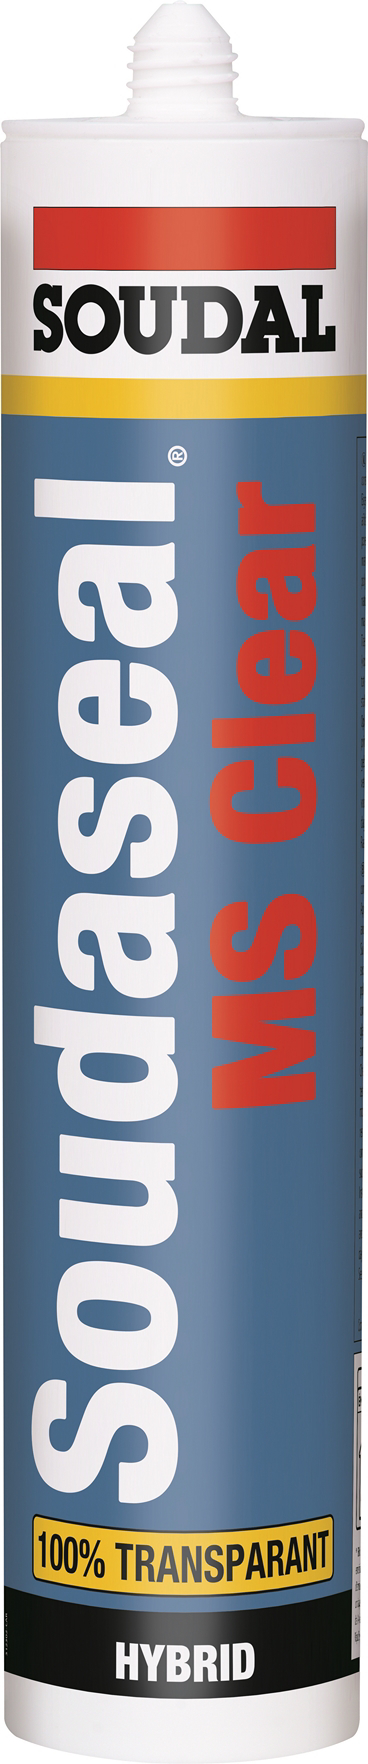 Soudaseal MS Clear - 290 ml glasklar  zum Kleben und Dichten